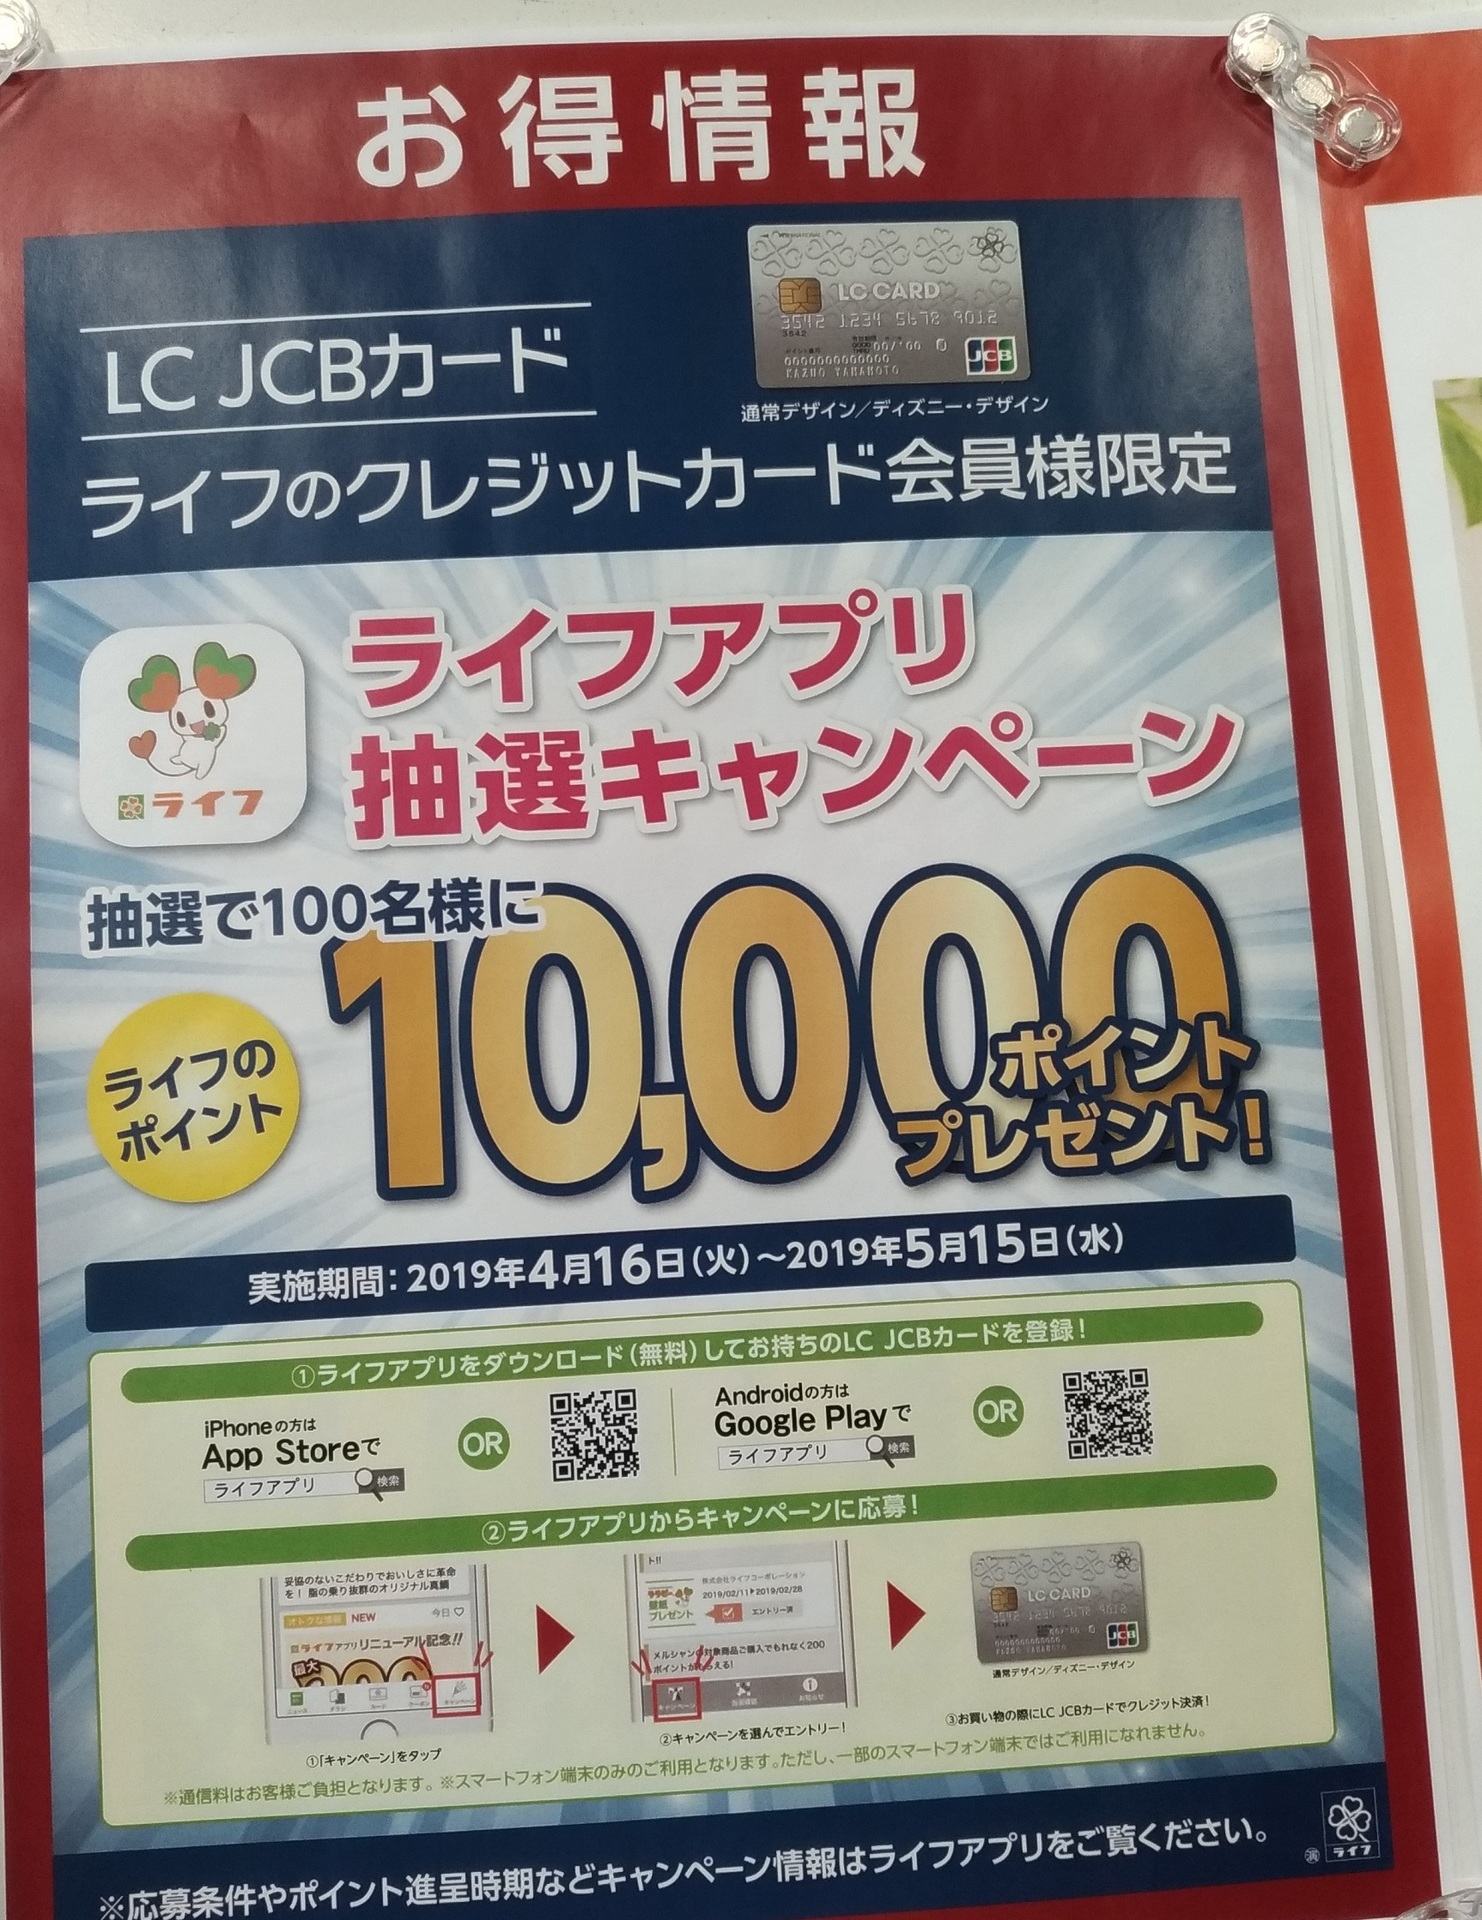 スーパーライフ アプリポイントカード登録で抽選キャンペーン スーパーライフ 大阪おすすめお惣菜野菜をブログでポイントも